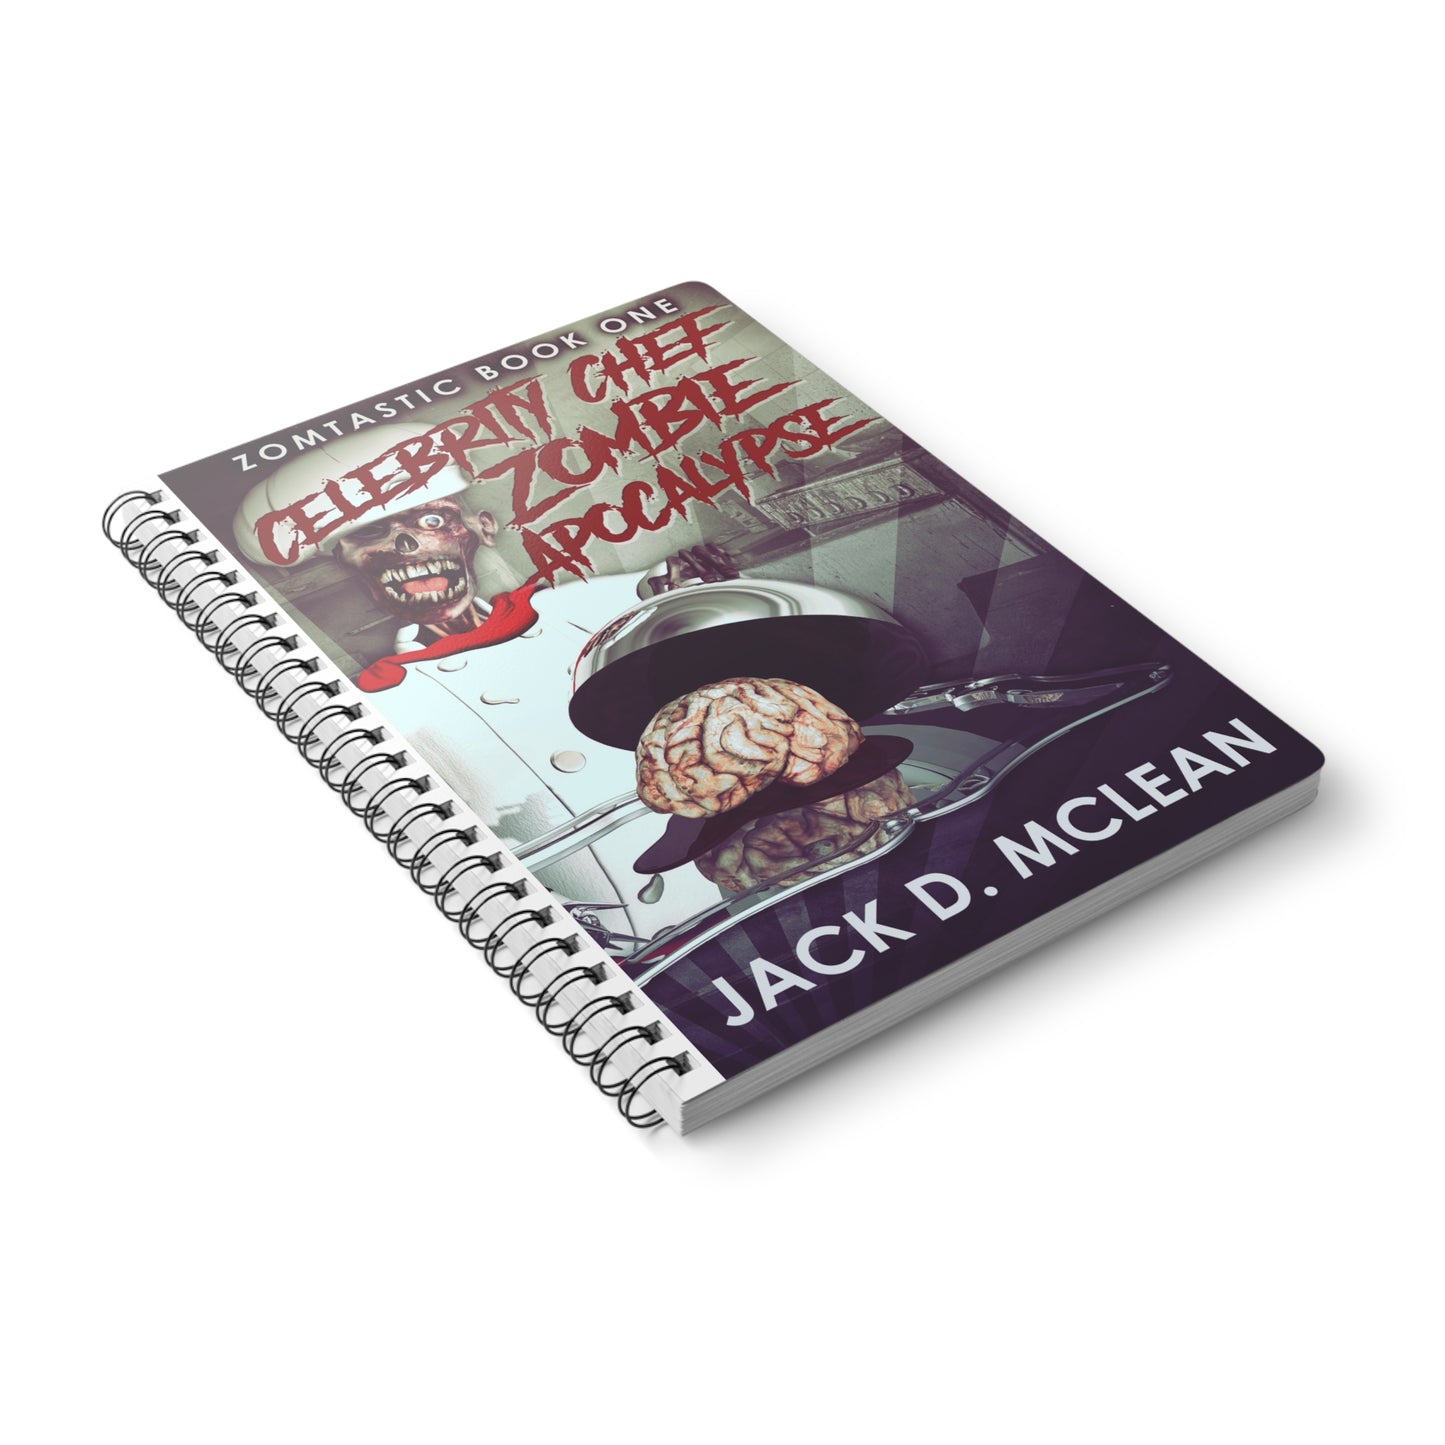 Celebrity Chef Zombie Apocalypse - A5 Wirebound Notebook